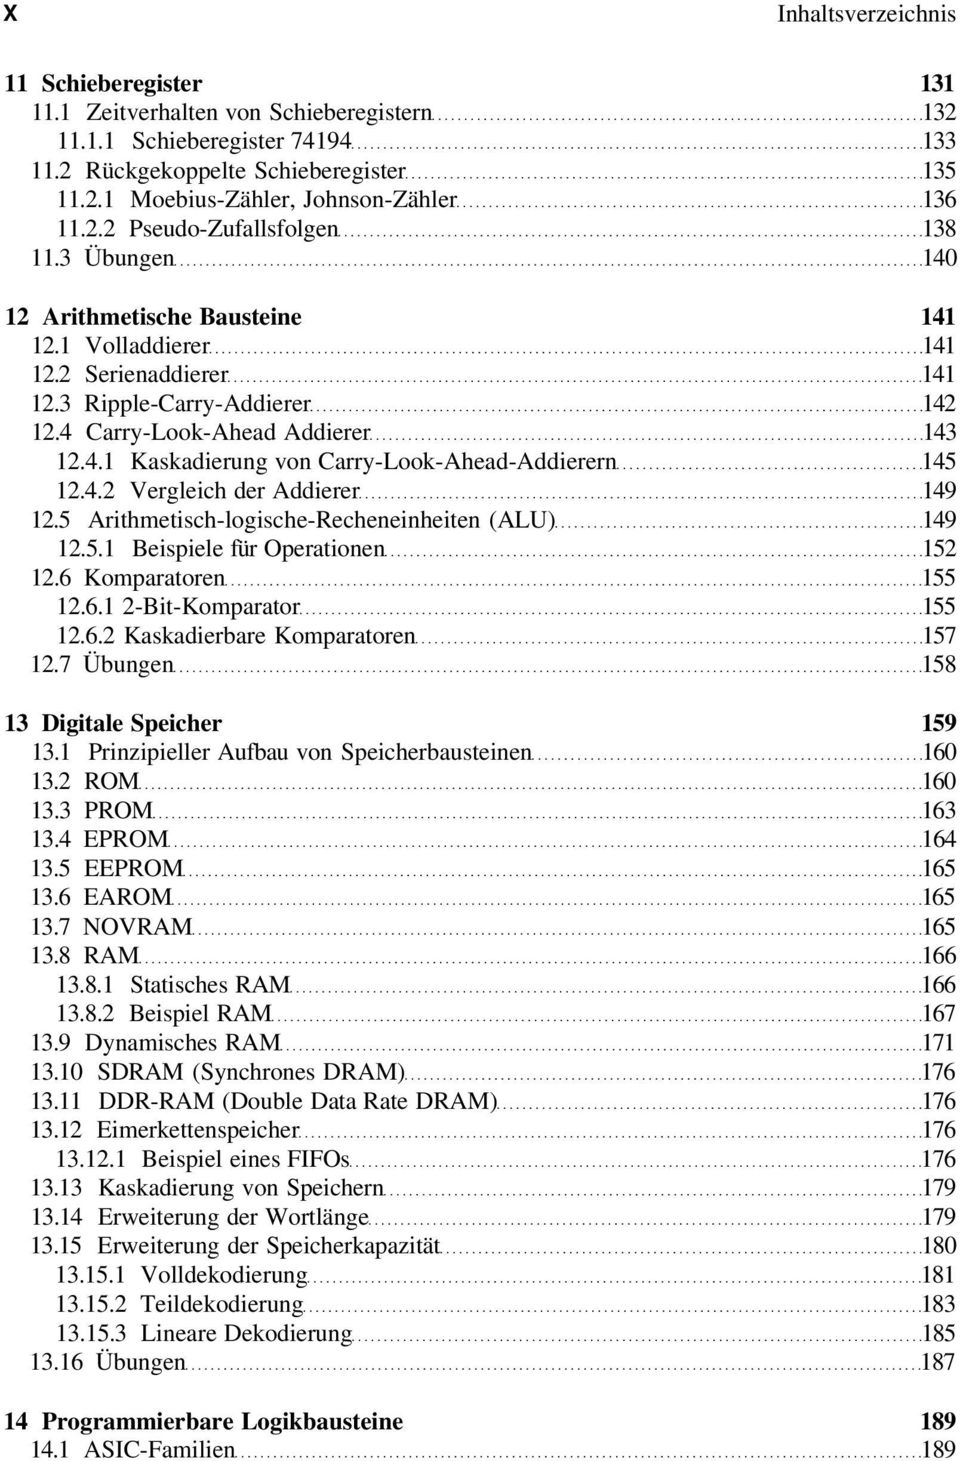 4.2 Vergleich der Addierer 149 12.5 Arithmetisch-logische-Recheneinheiten (ALU) 149 12.5.1 Beispiele für Operationen 152 12.6 Komparatoren 155 12.6.1 2-Bit-Komparator 155 12.6.2 Kaskadierbare Komparatoren 157 12.